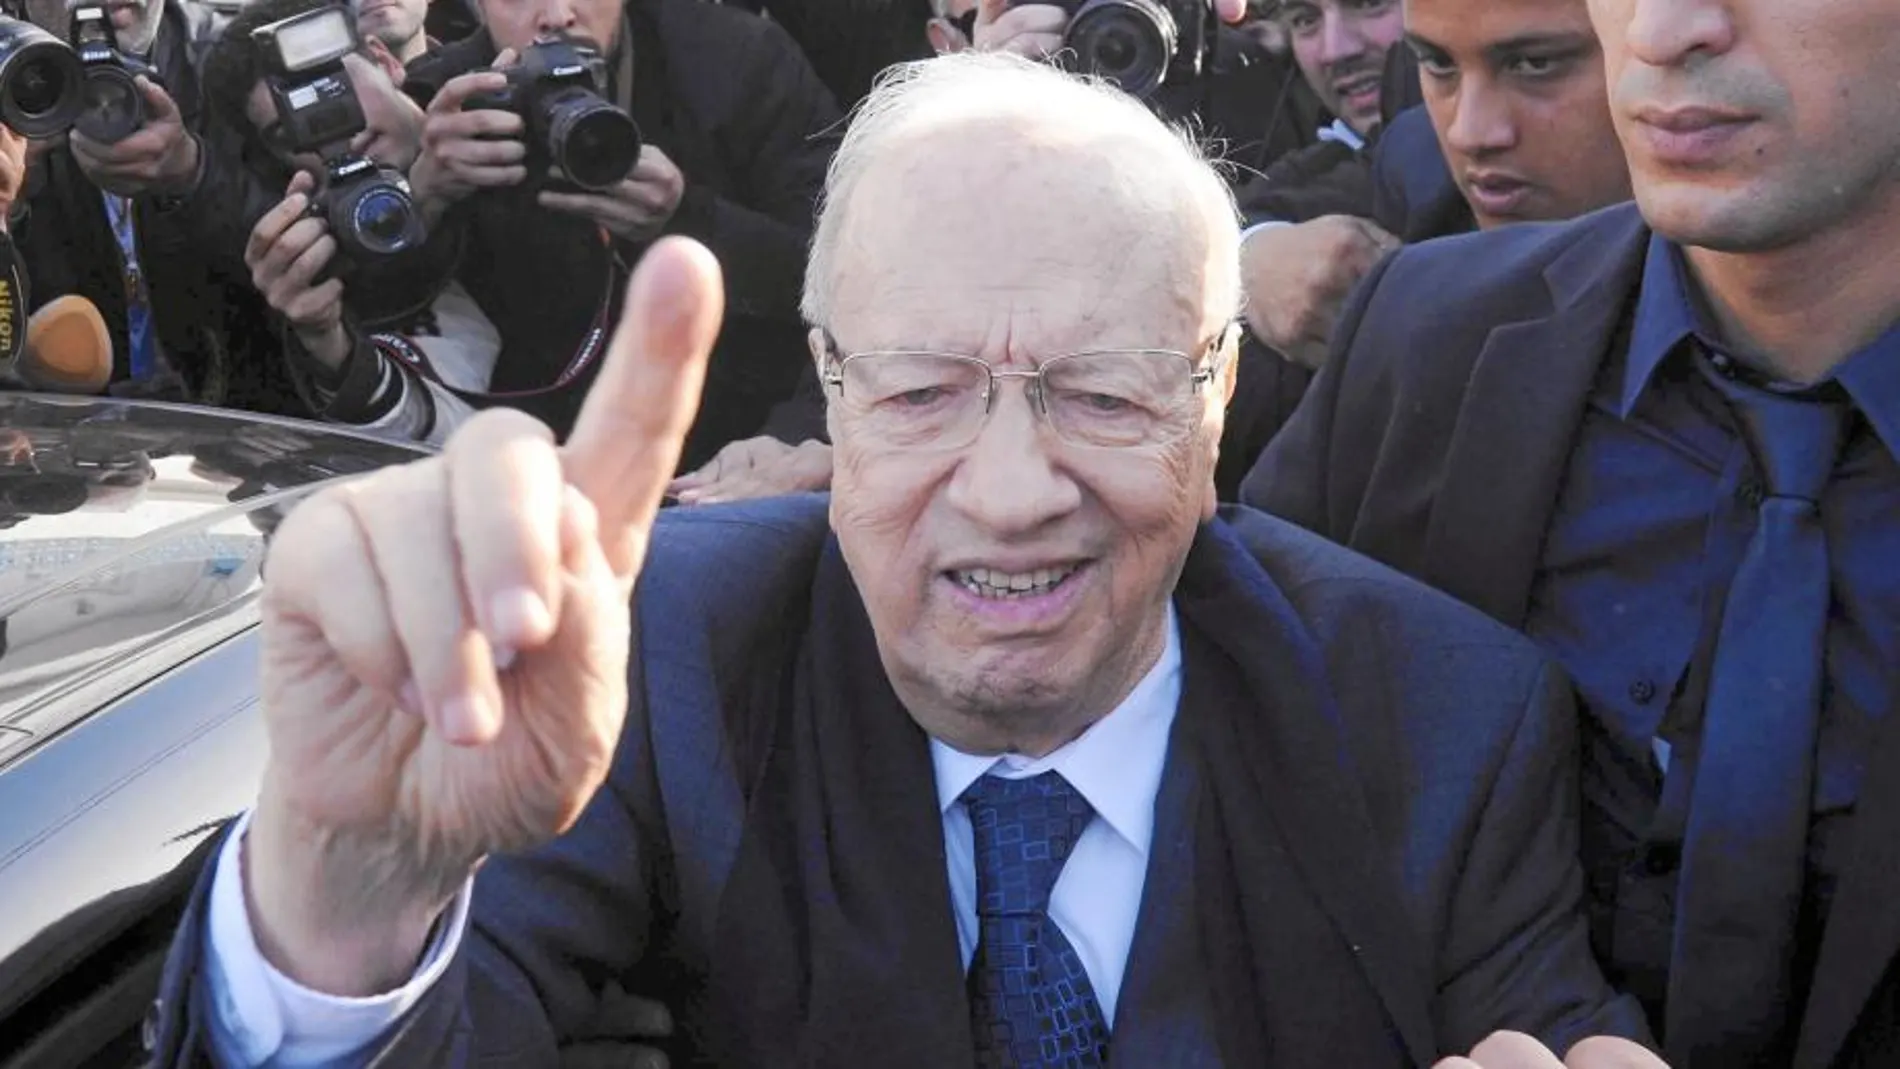 UN VETERANO. Essesbi es un viejo conocido de la política tunecina. Fue ministro del antiguo régimen